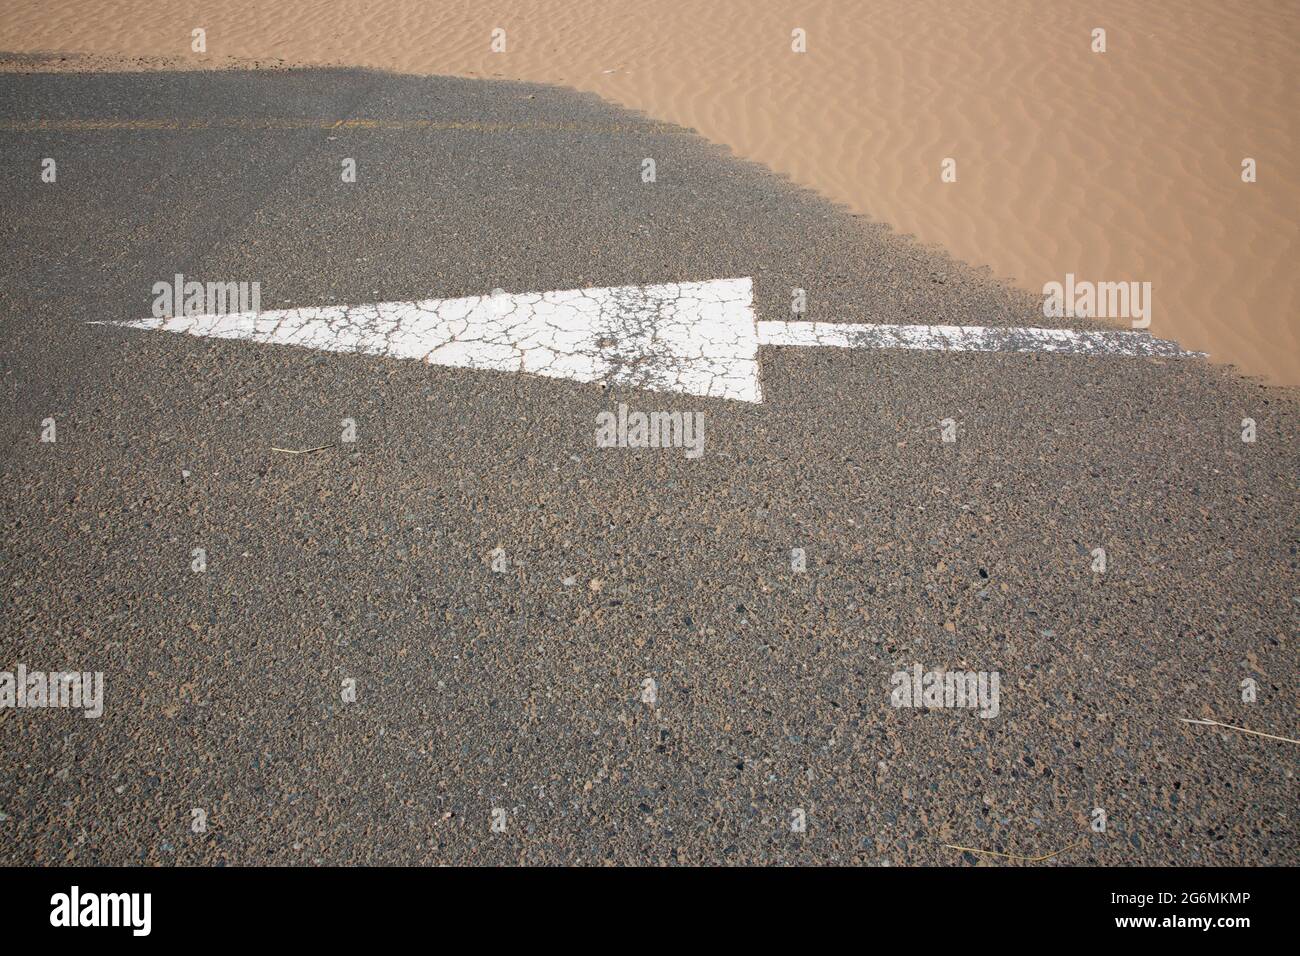 Una freccia bianca sulla strada parzialmente coperta di sabbia a seguito di una tempesta di sabbia a Dubai, Emirati Arabi Uniti. Foto Stock